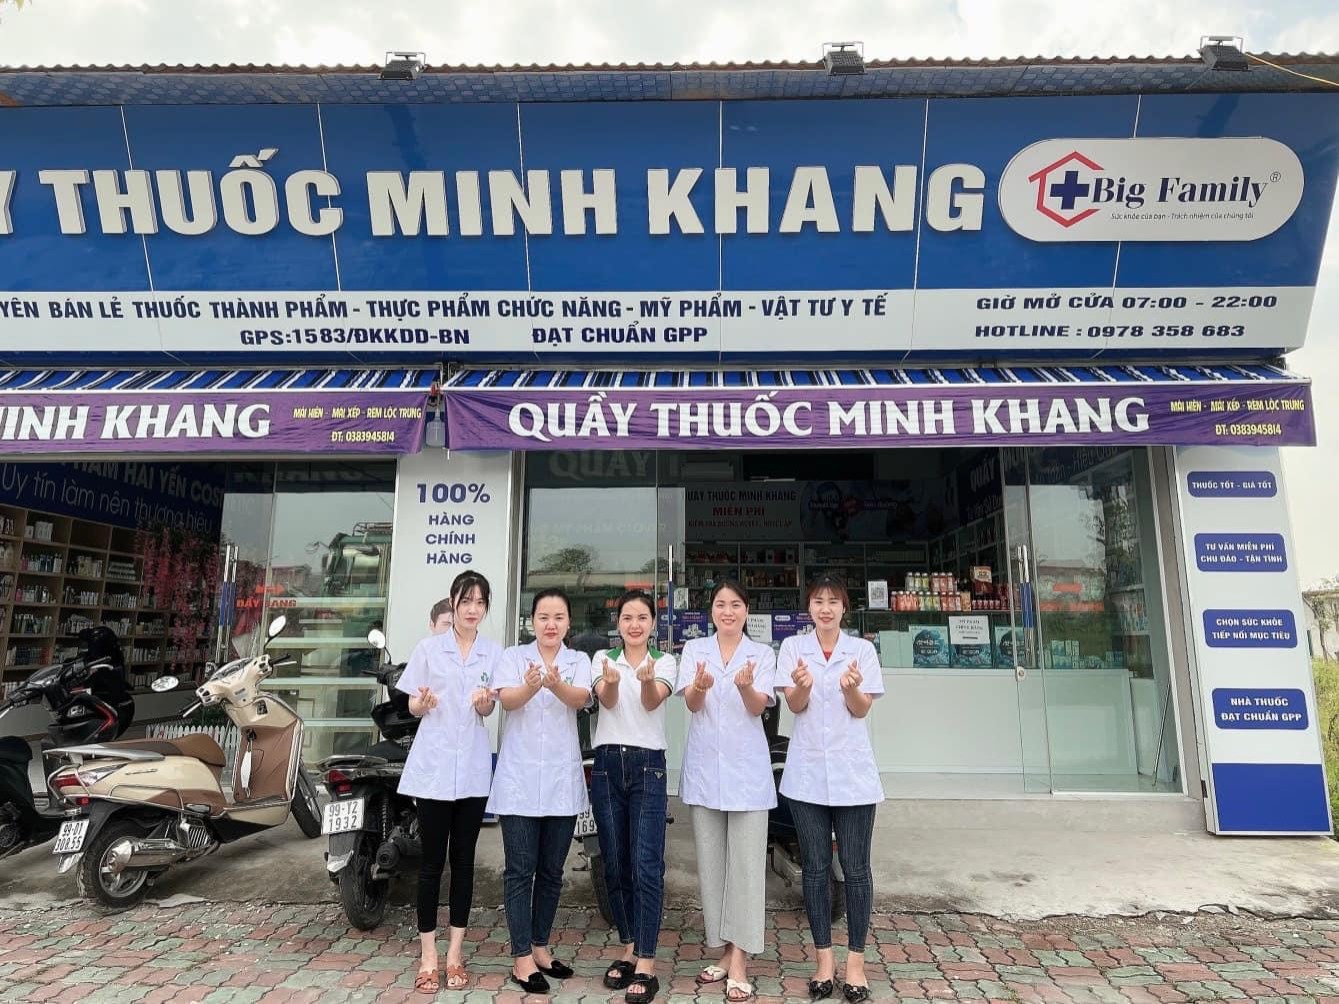 Đội ngũ nhân viên quầy thuốc Minh Khang